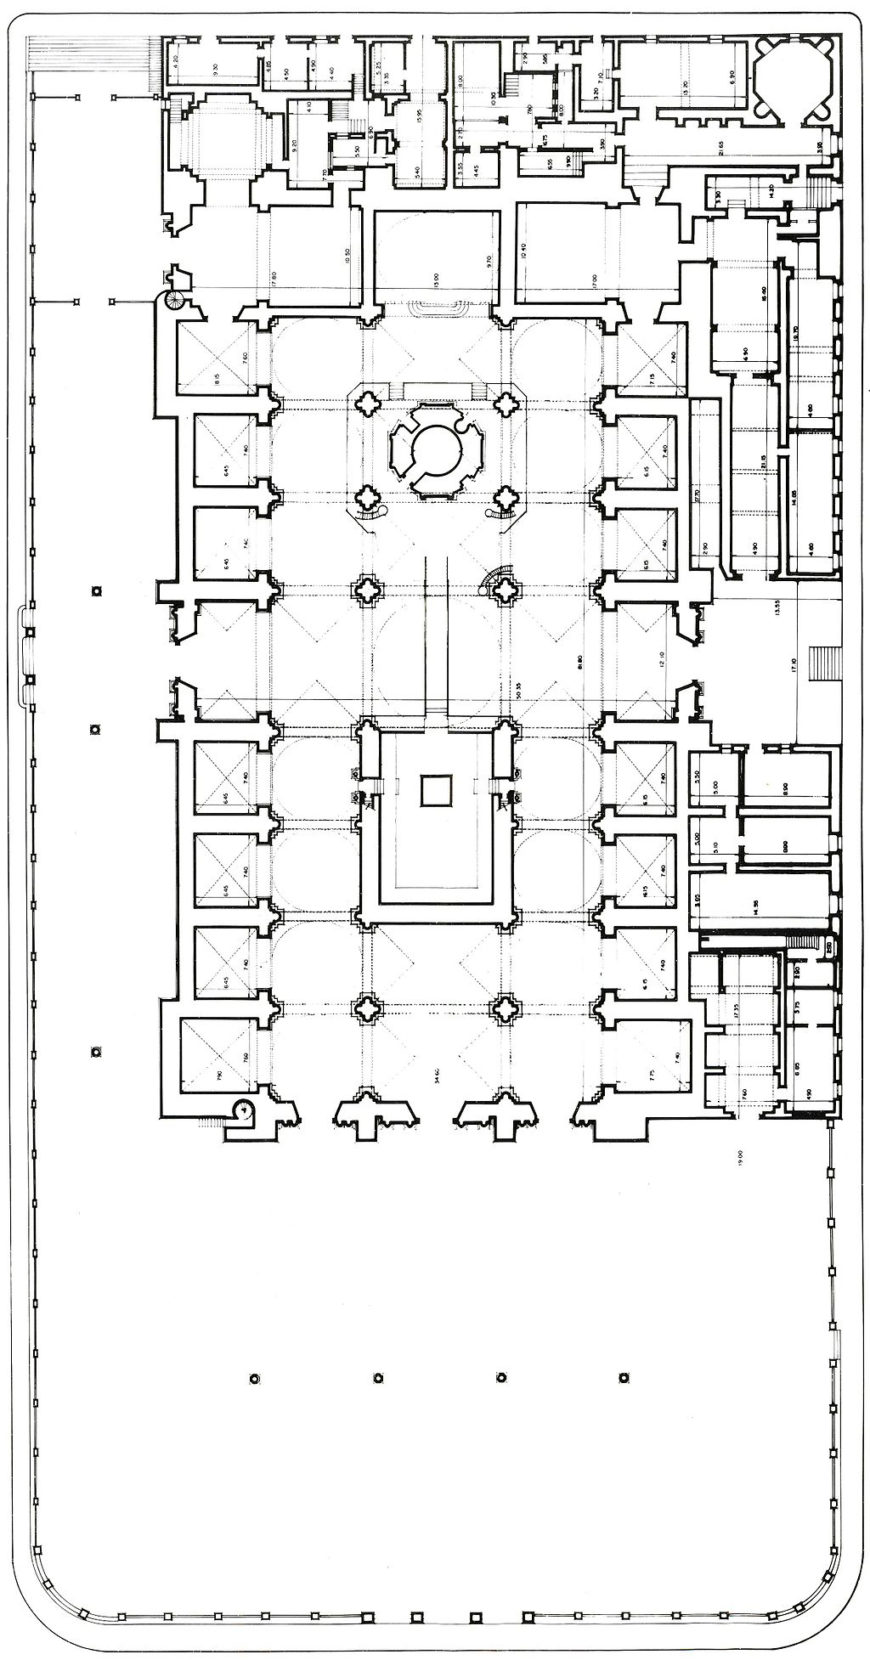 Plan of Puebla Cathedral